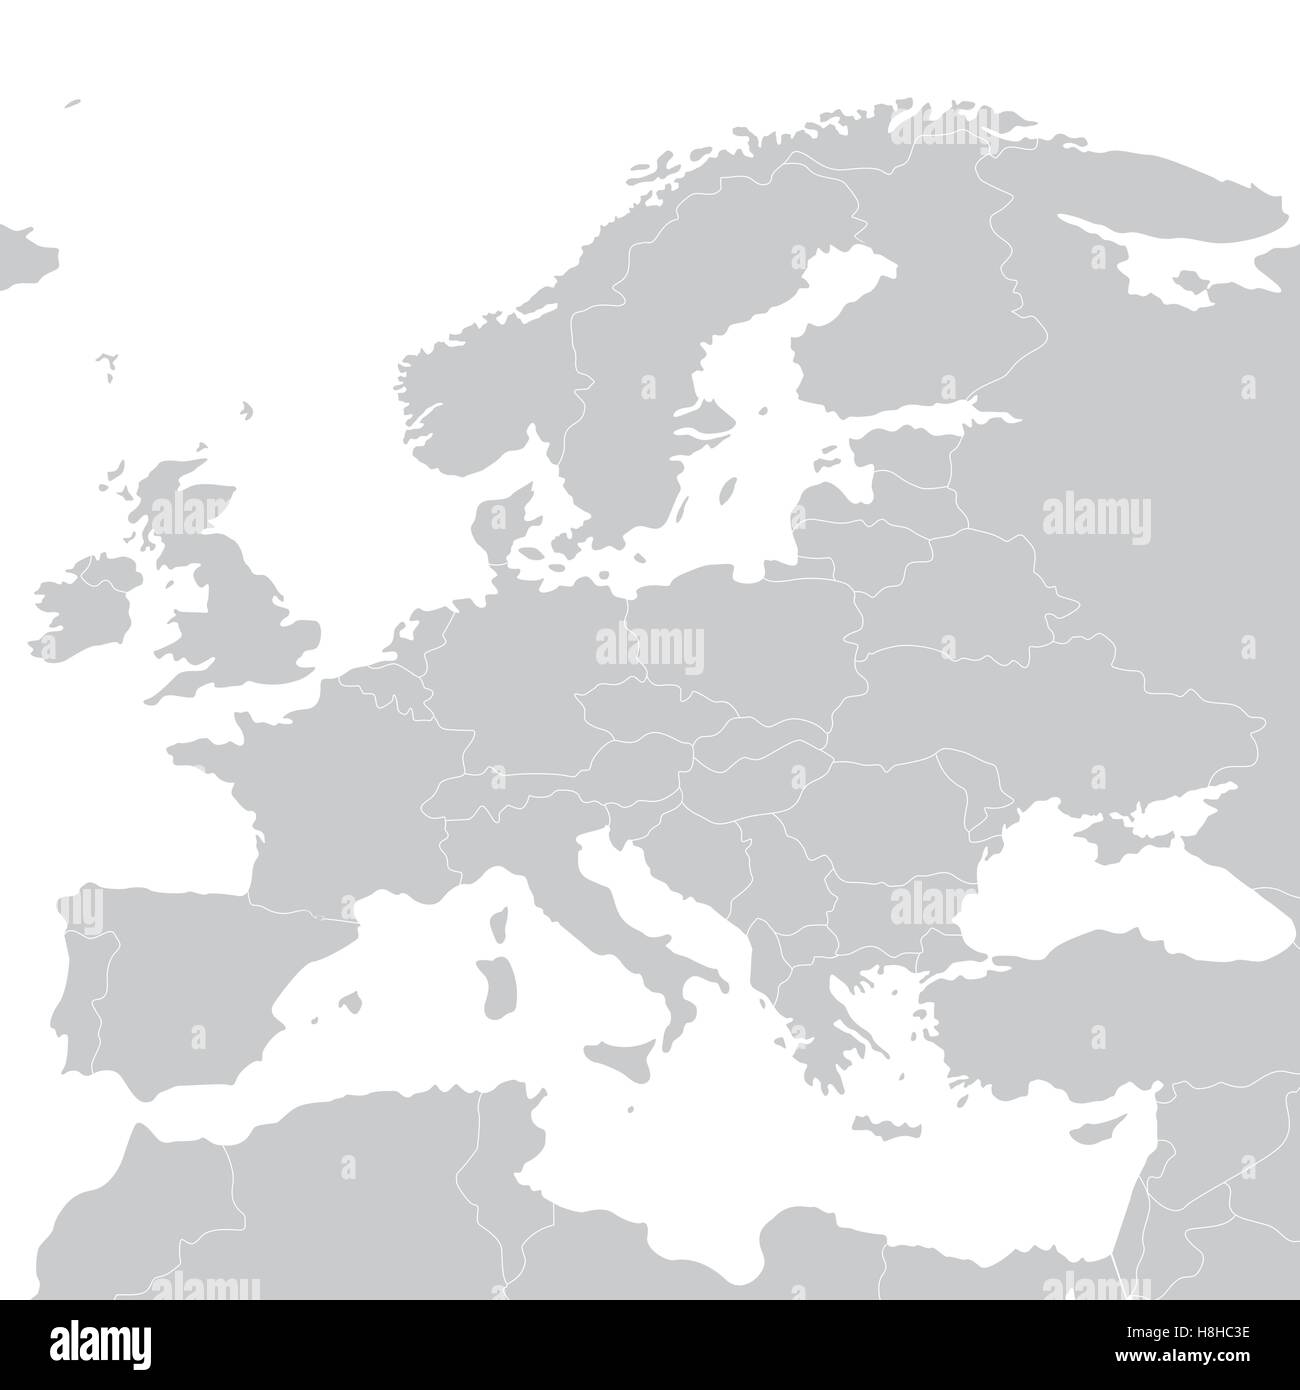 Graue politische Landkarte Europas. Vektor-illustration Stock Vektor